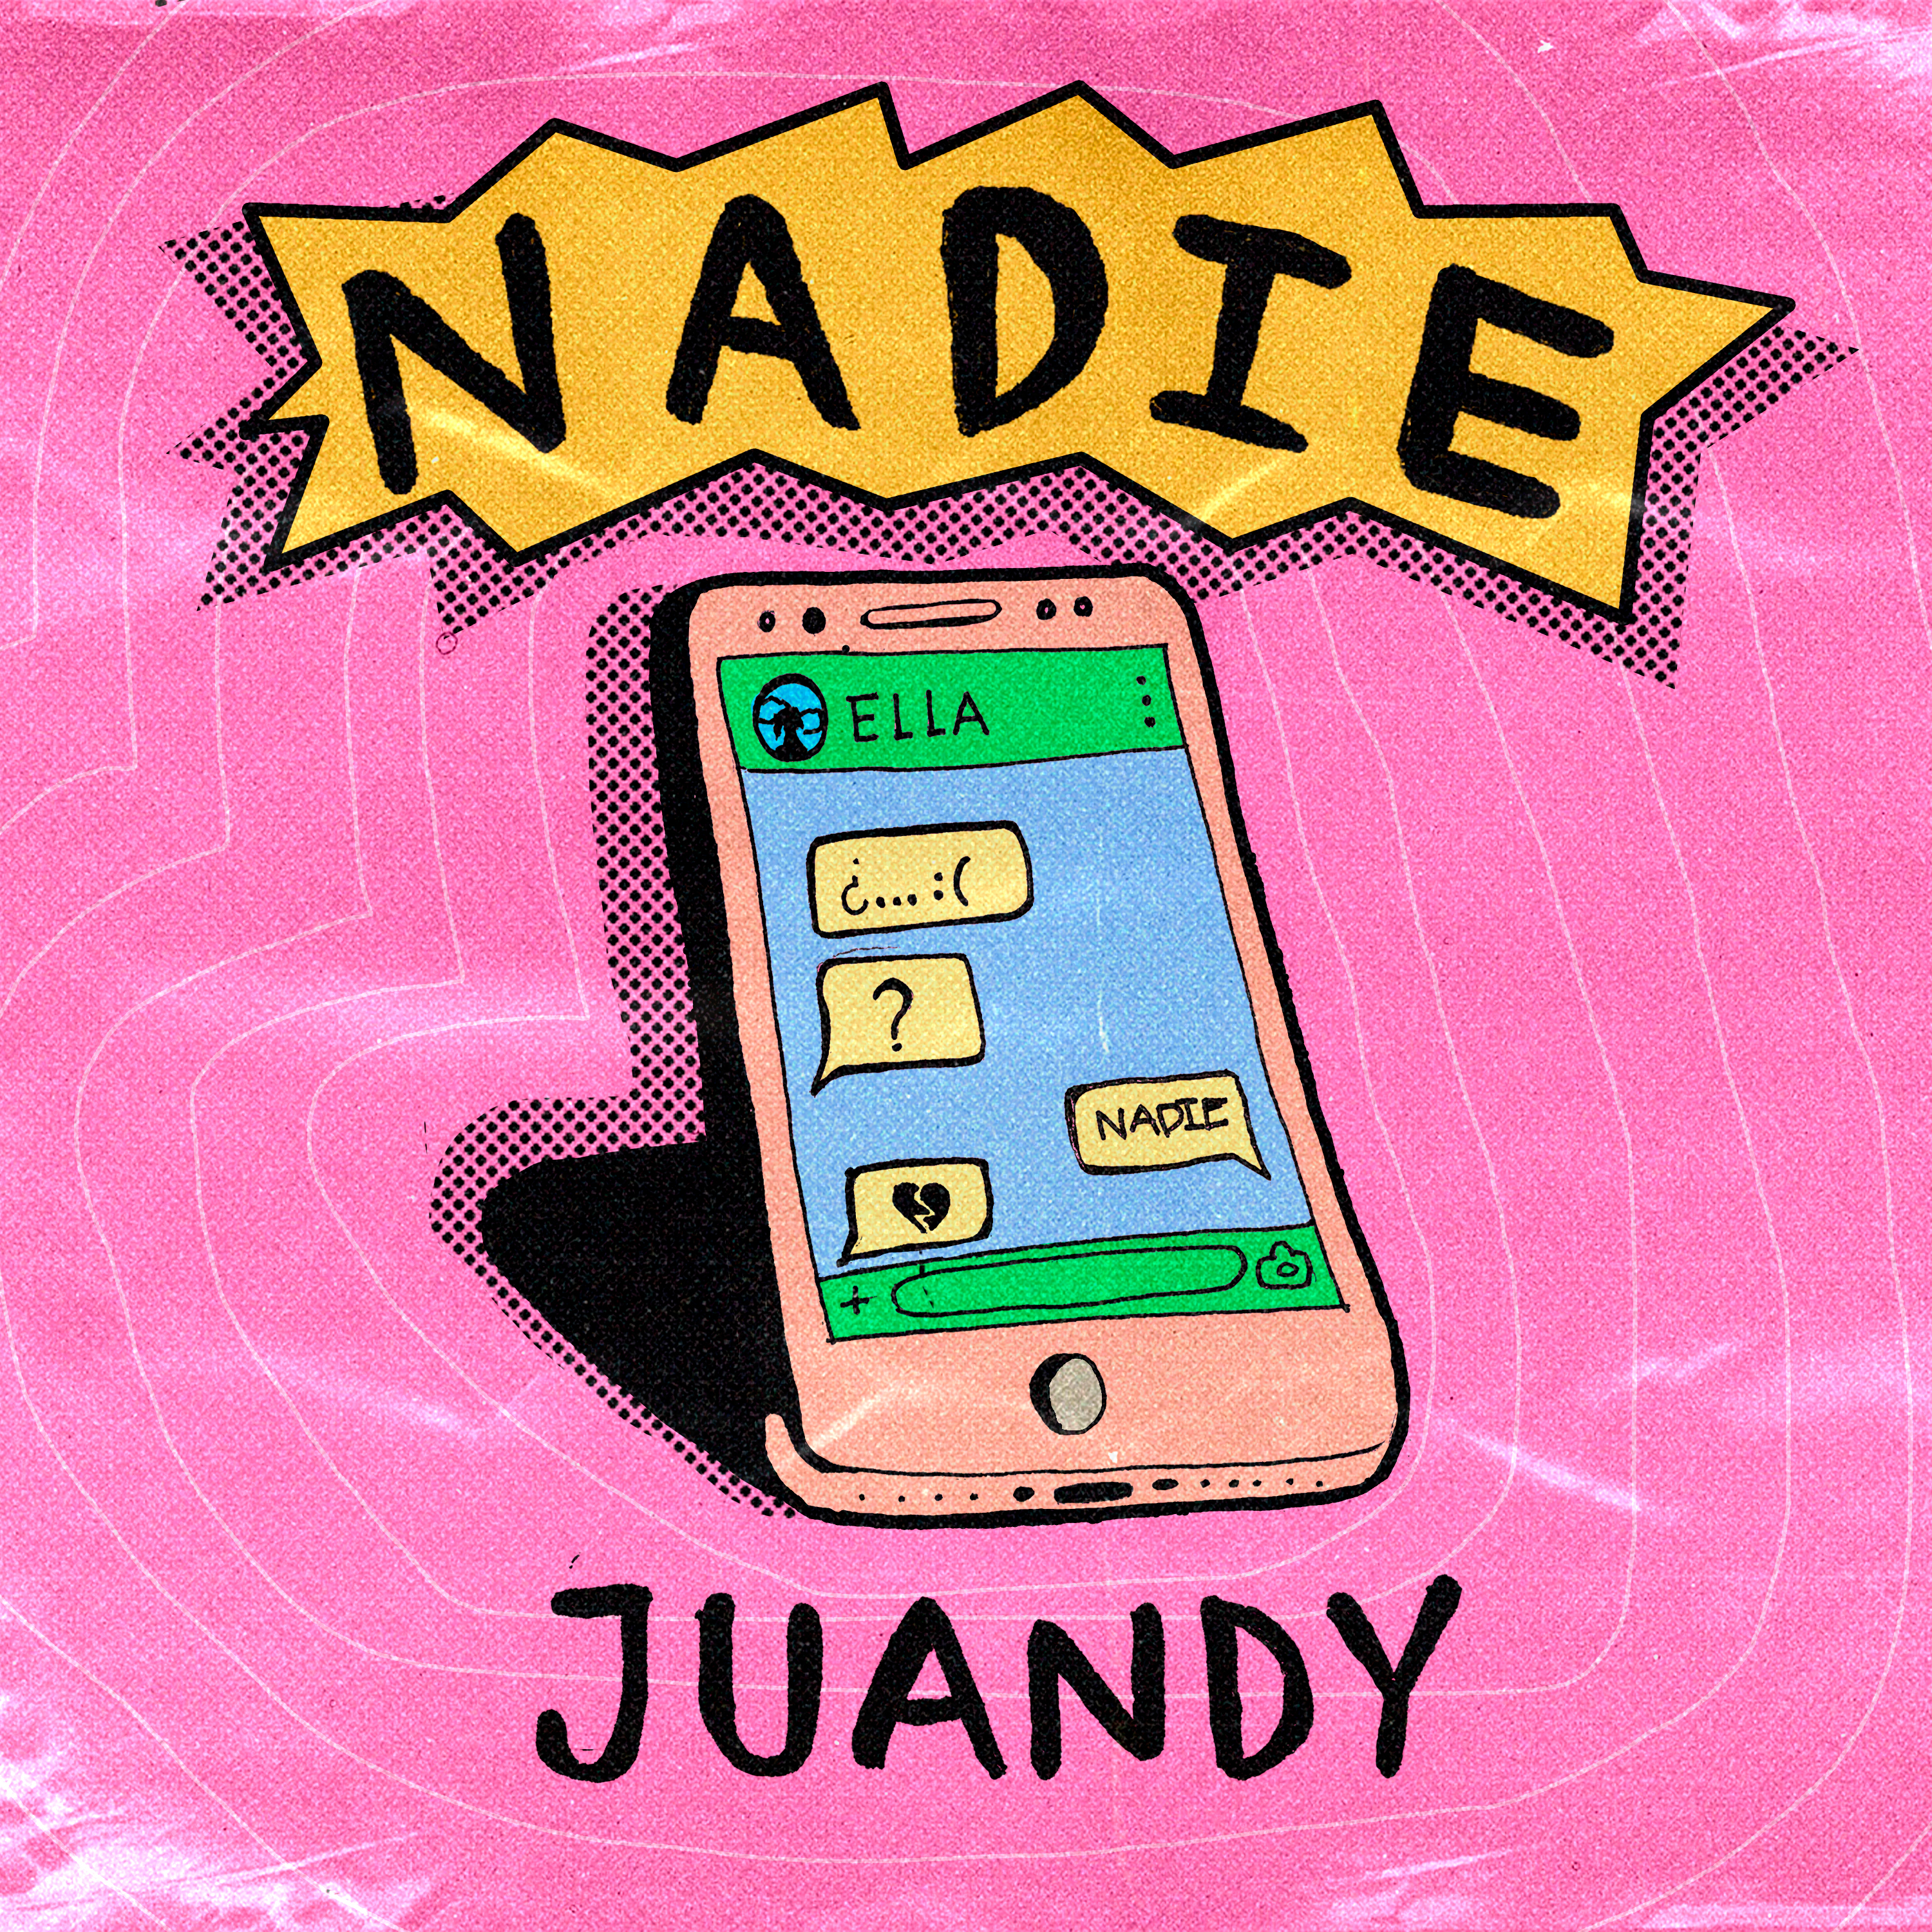 Juandy le da un gran inicio musical a este 2022 con su sencillo ‘Nadie’ – @juandyyyy_